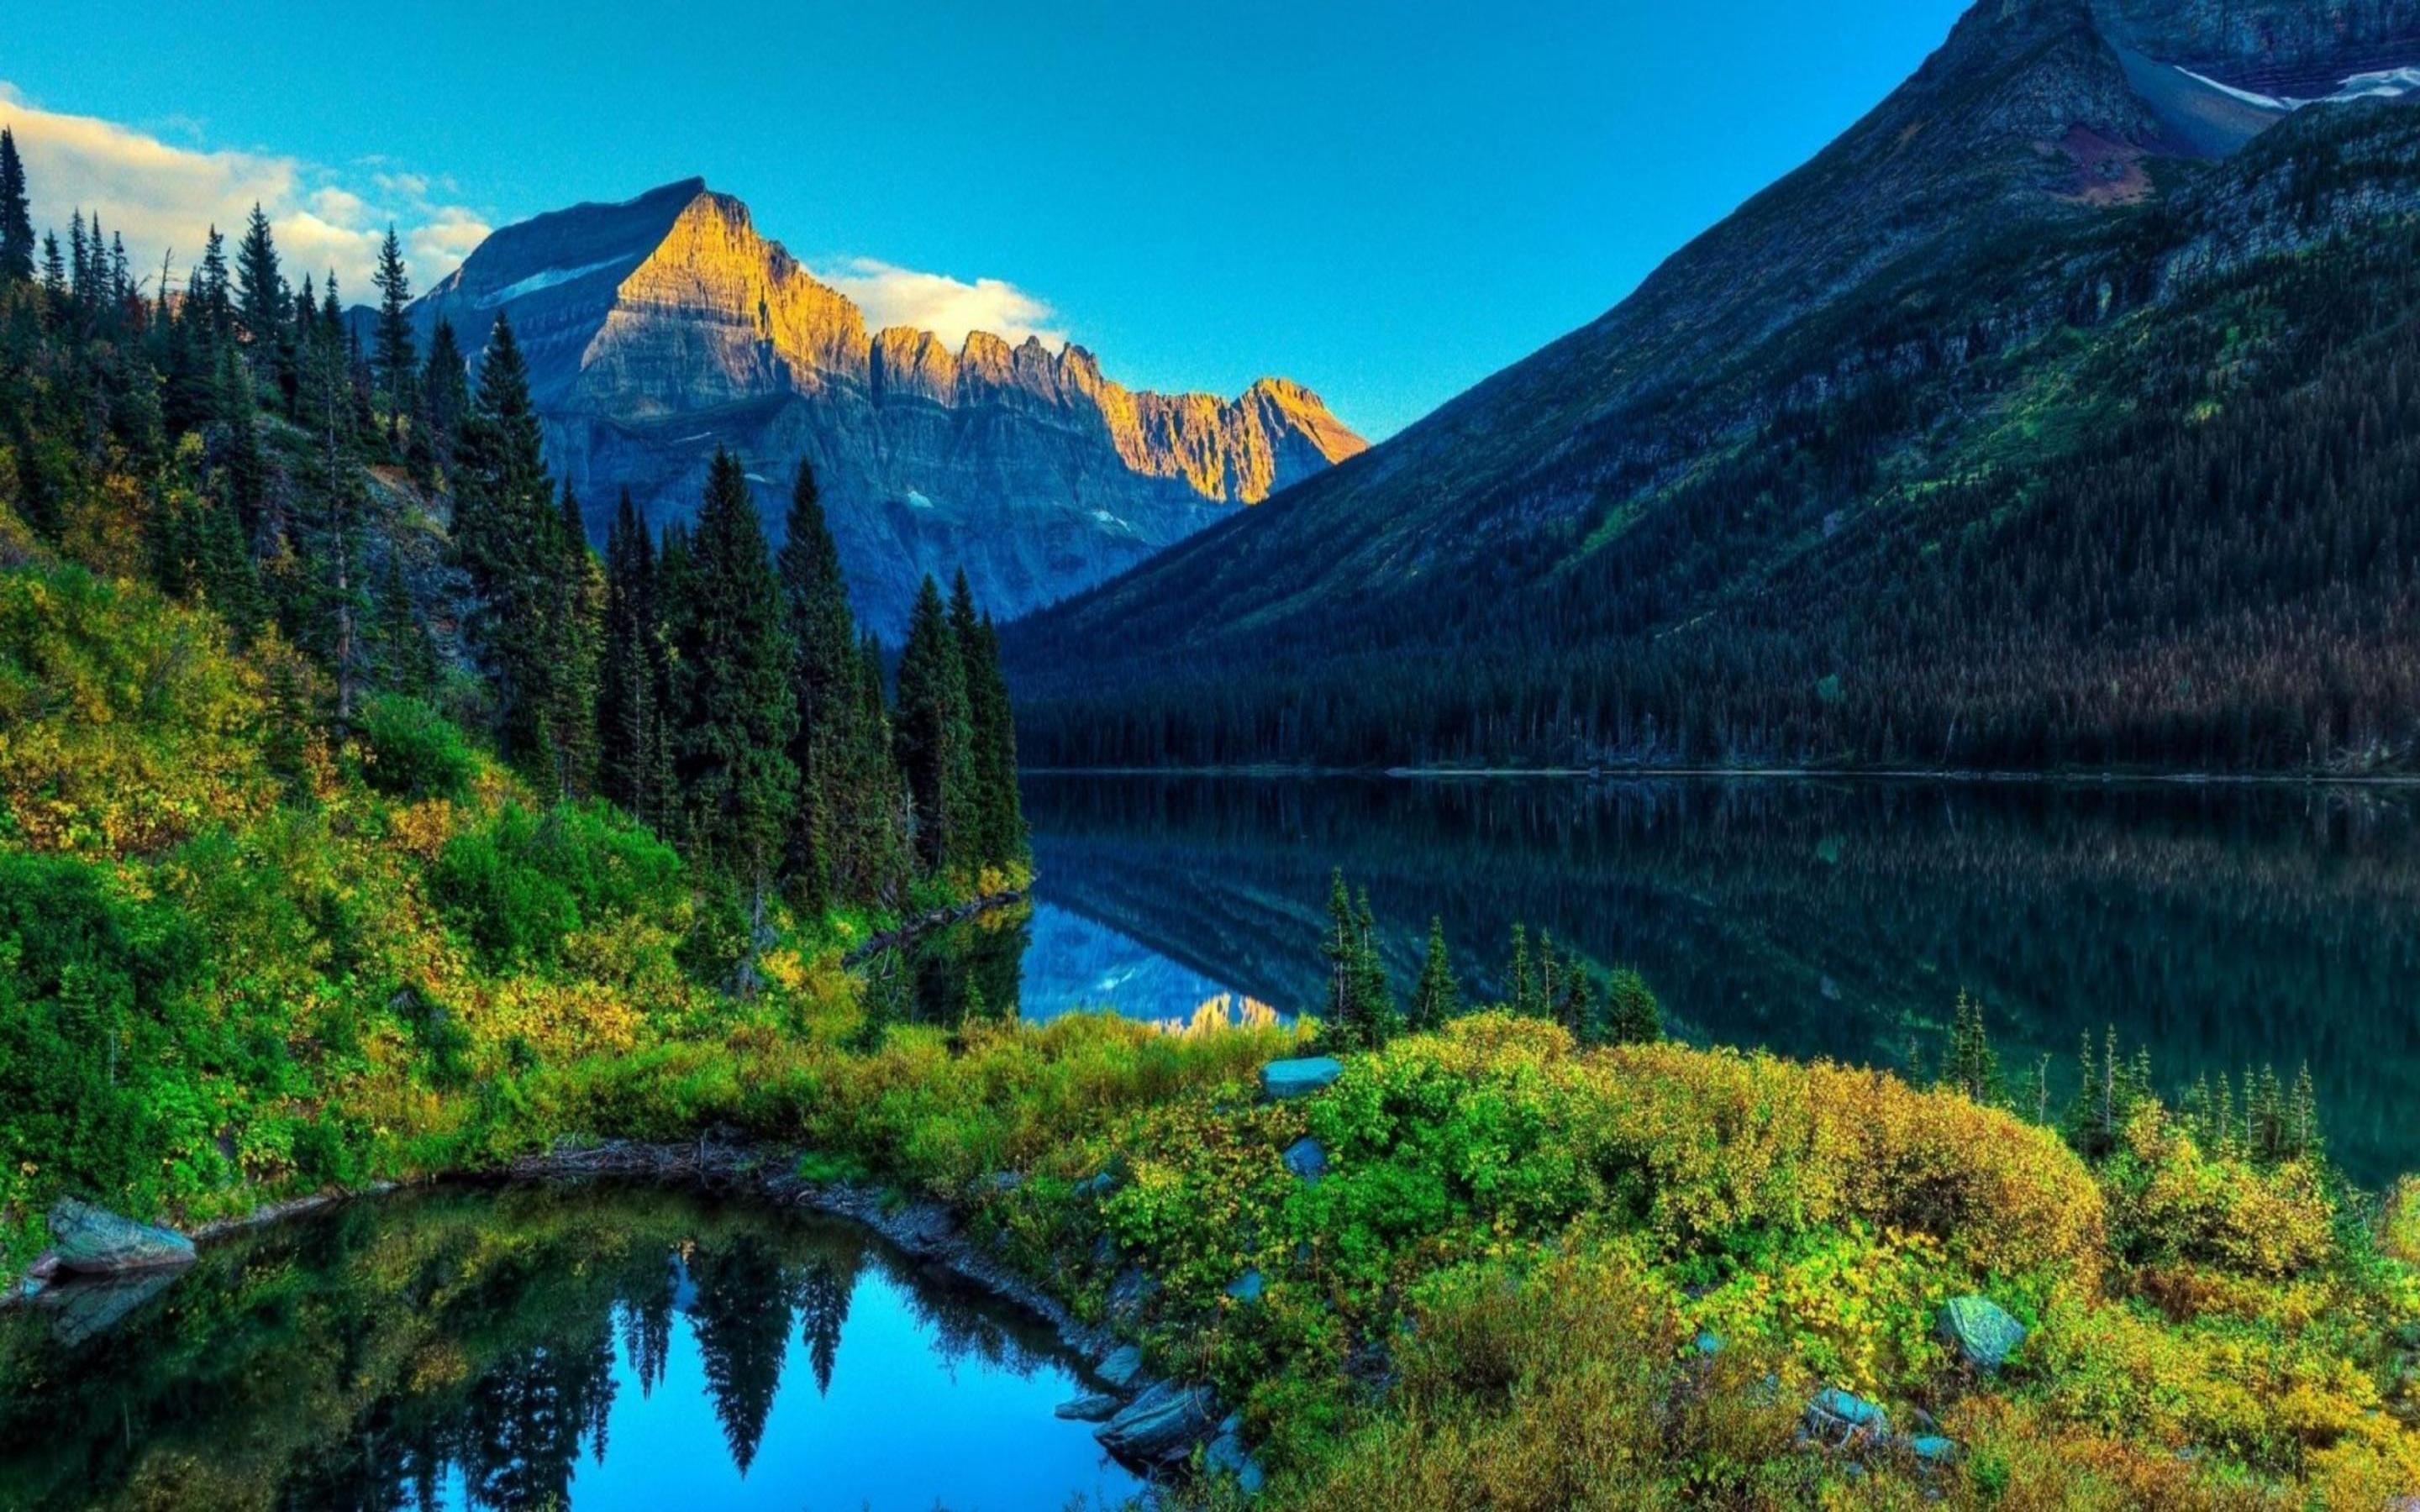 Big jpg image. Озеро Морейн. Блу-Маунтинс (горы, США). Горы, озеро, деревья, Reka пейзаж. Шикарный пейзаж.